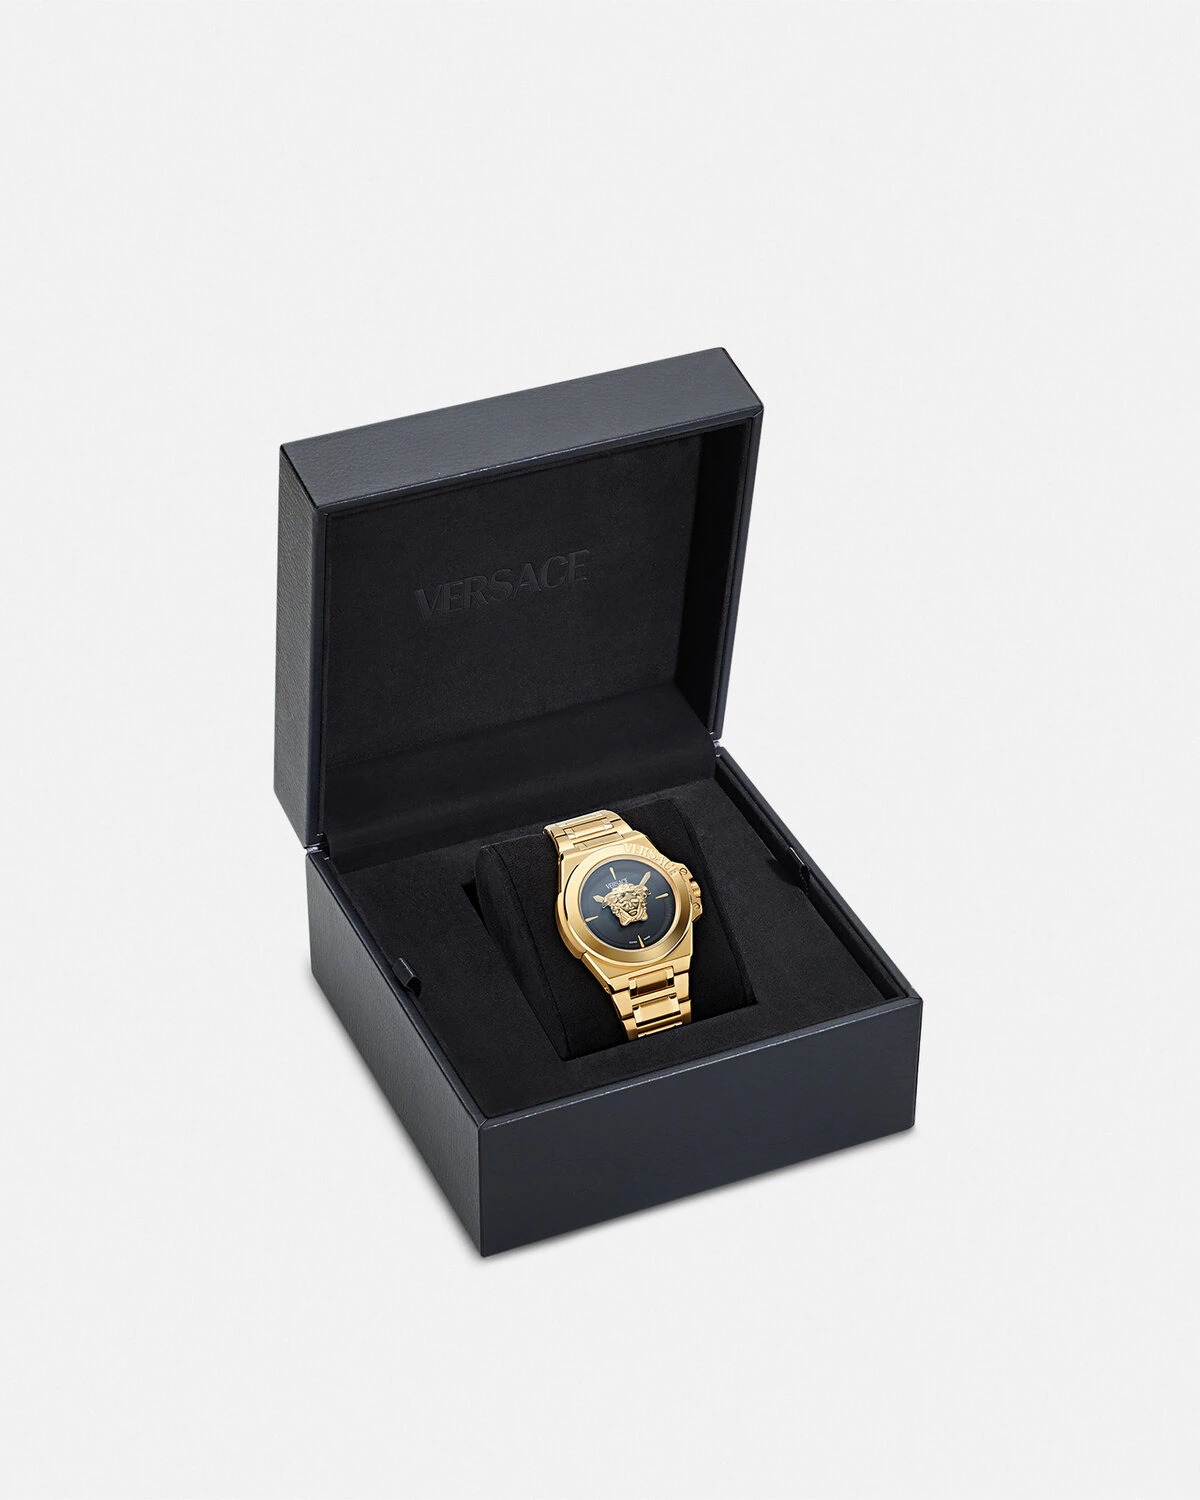 Versace Hera Watch - 4